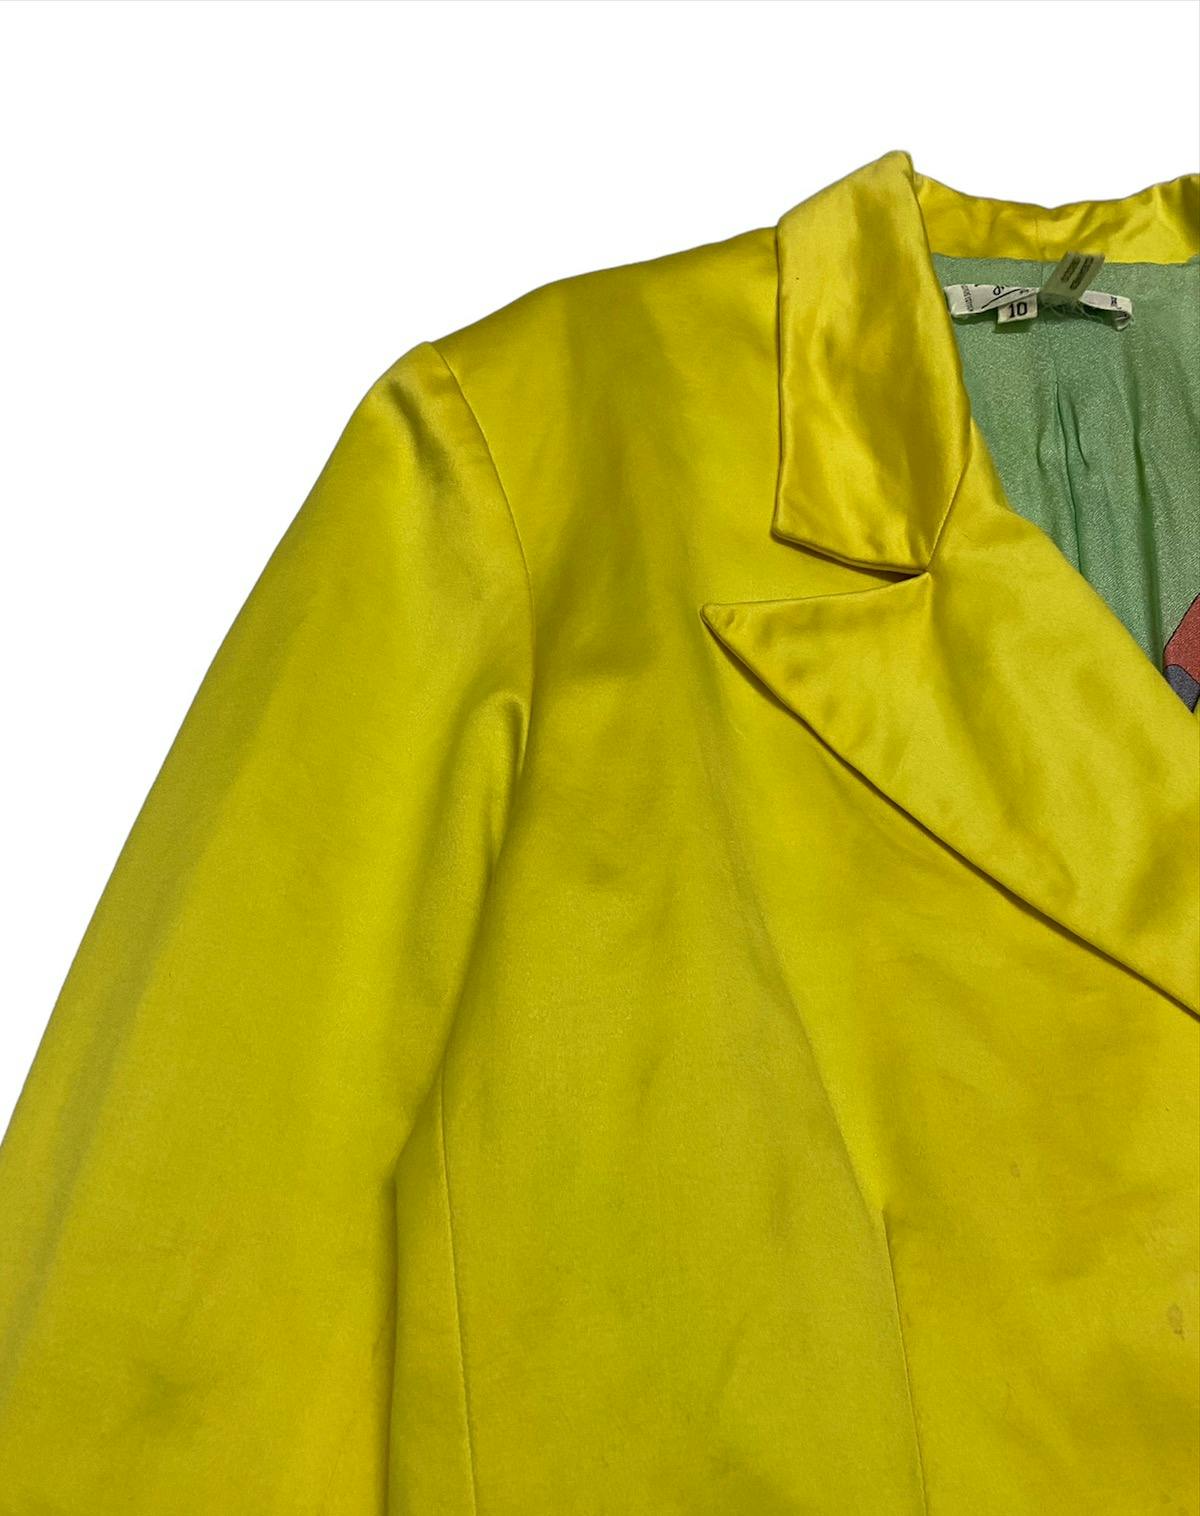 Vintage Emilio Pucci Silk Women Blazer Jacket - 4